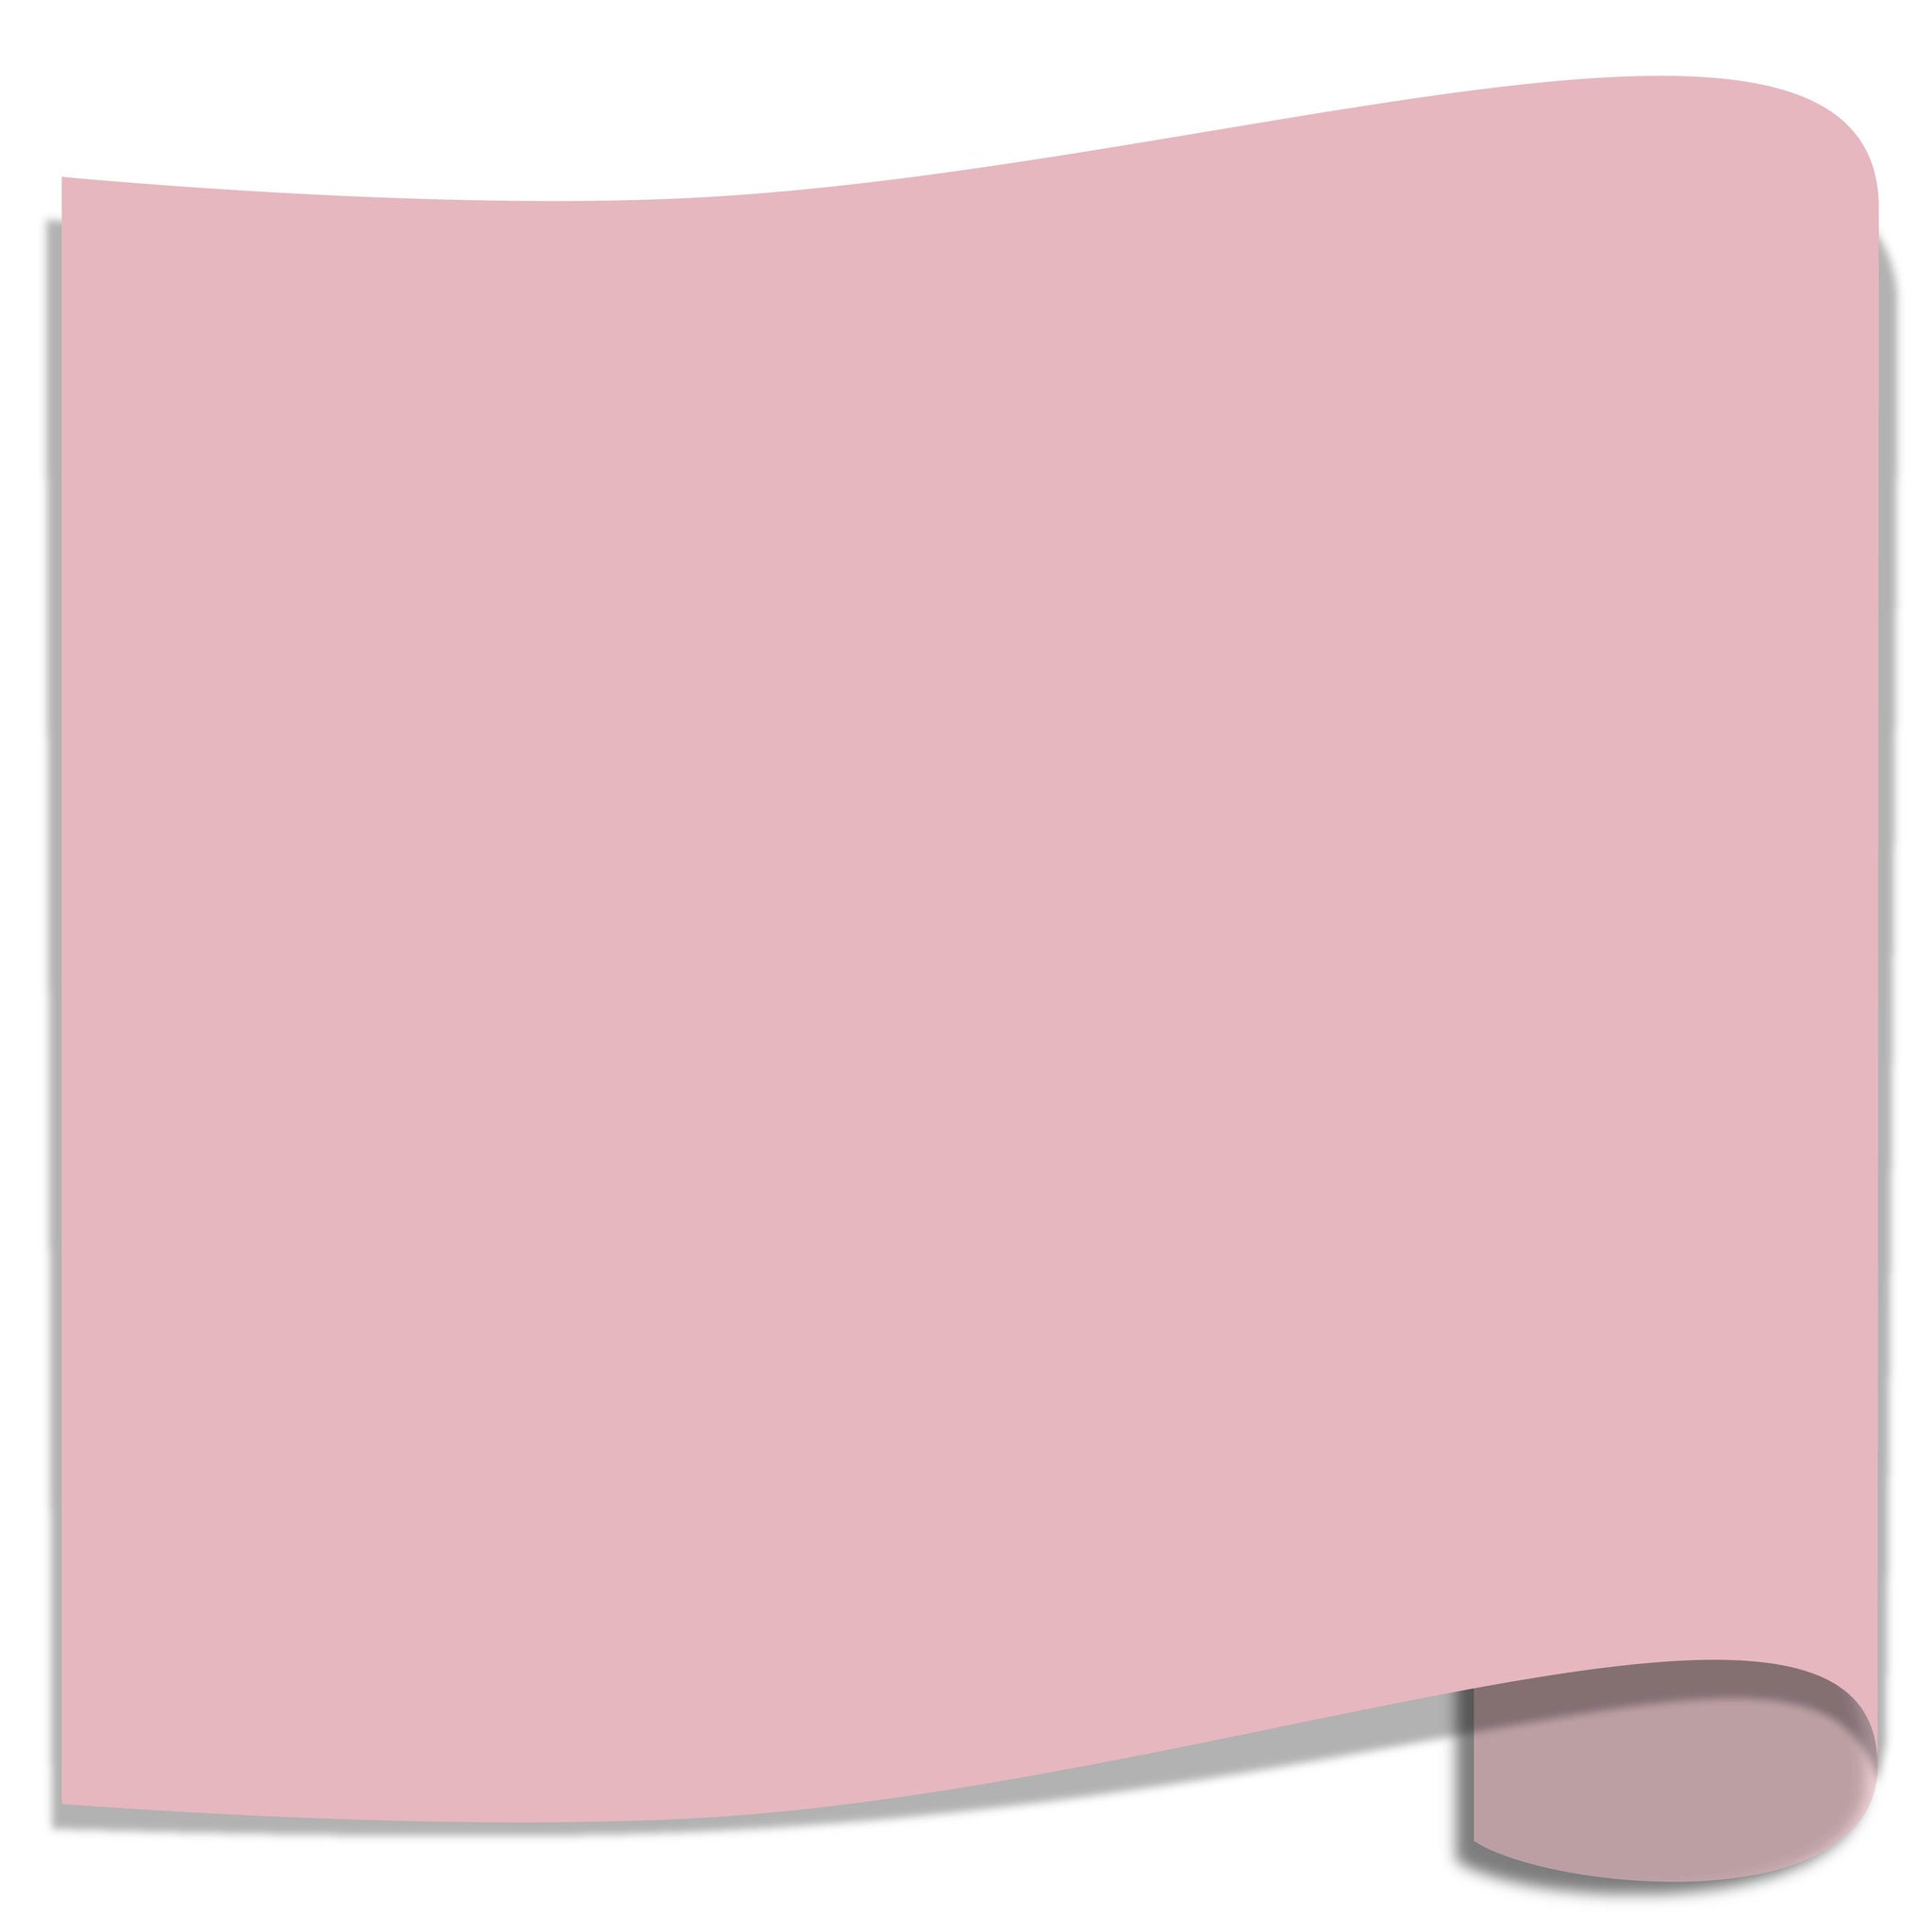 Siser EasyWeed Heat Transfer Vinyl (HTV) - Light Pink - 15 in x 12 inch Sheet